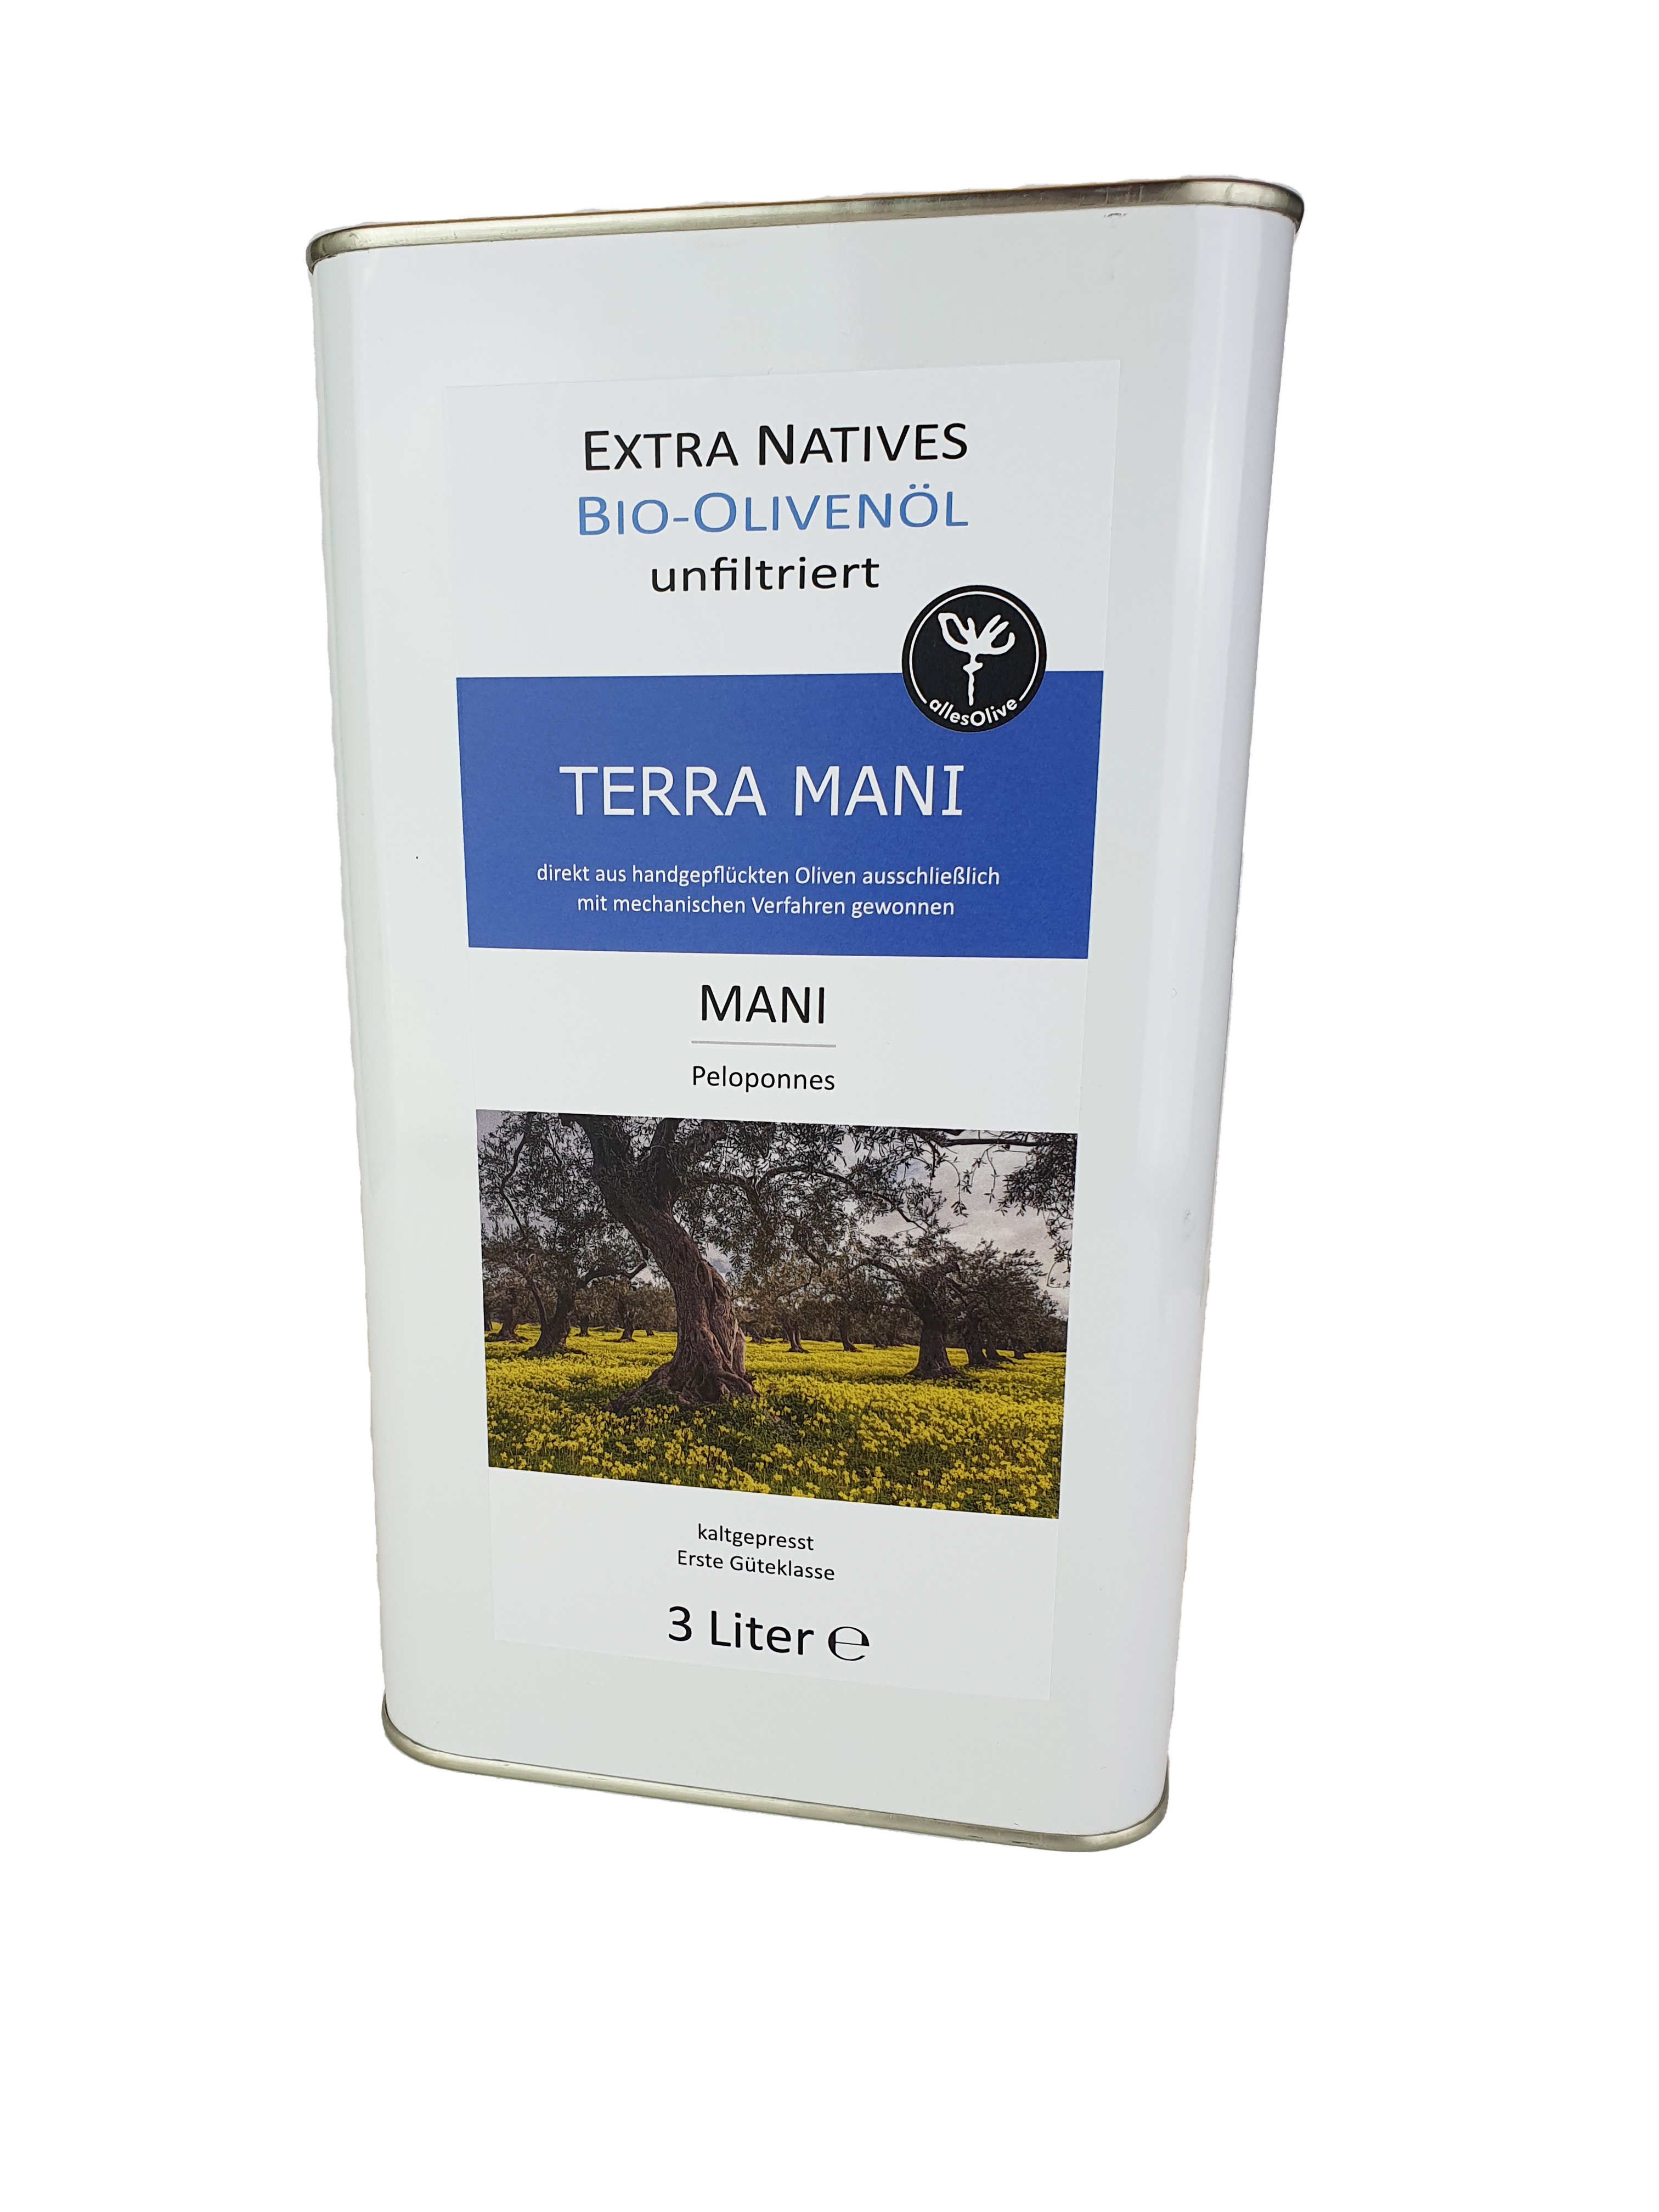 Aceite de oliva virgen extra ecológico y sin filtrar TERRA-MANI, en envase de 3 litros.